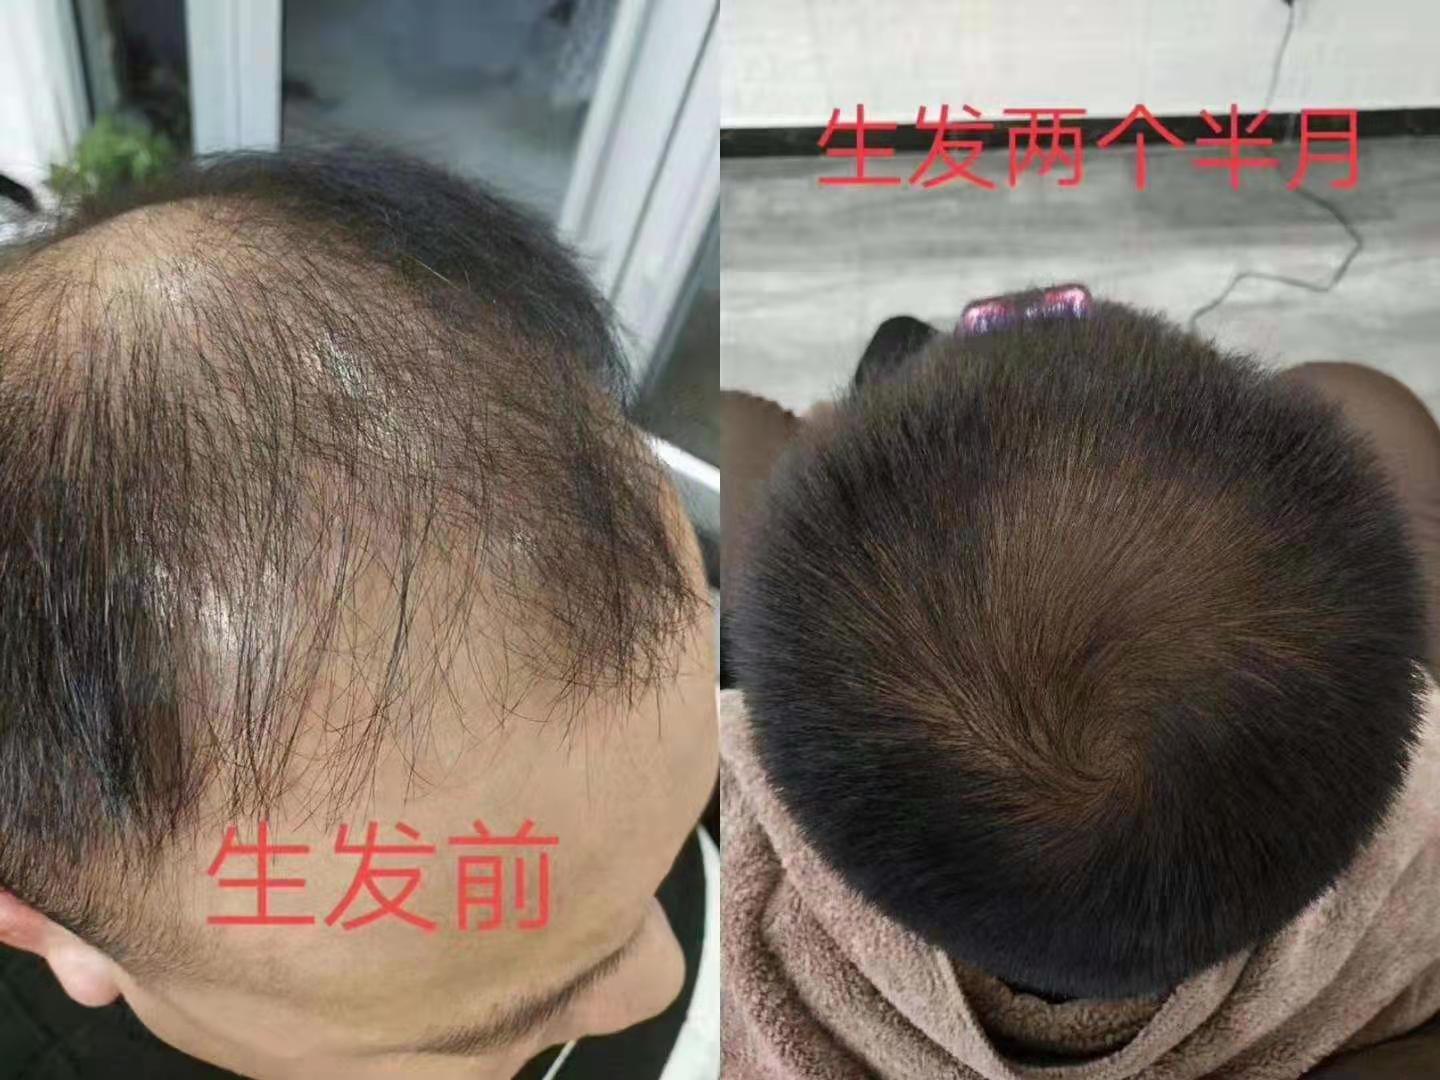 秀丝顿植物养发健康时尚是一种以天然植物为主要成分的头发染发方法